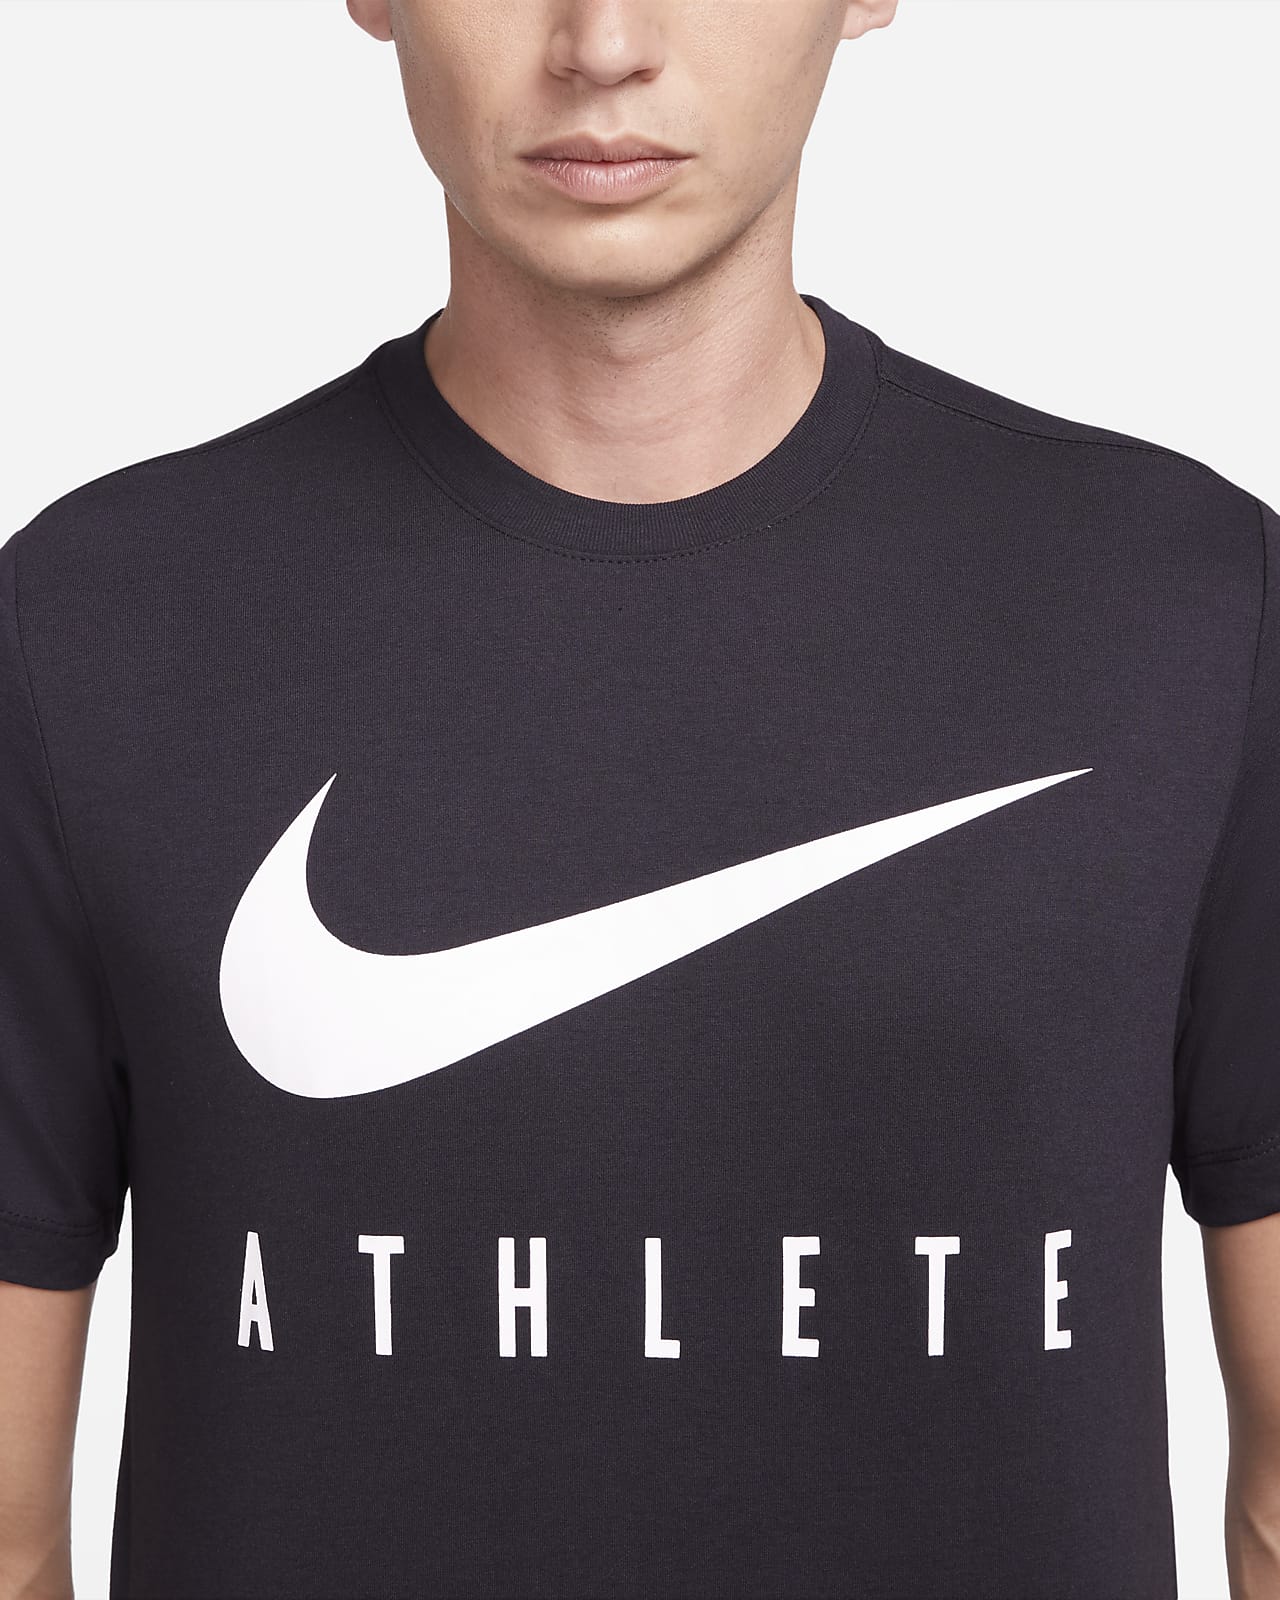 Grape Bliv ved kritiker Nike Dri-FIT-trænings-T-shirt til mænd. Nike DK